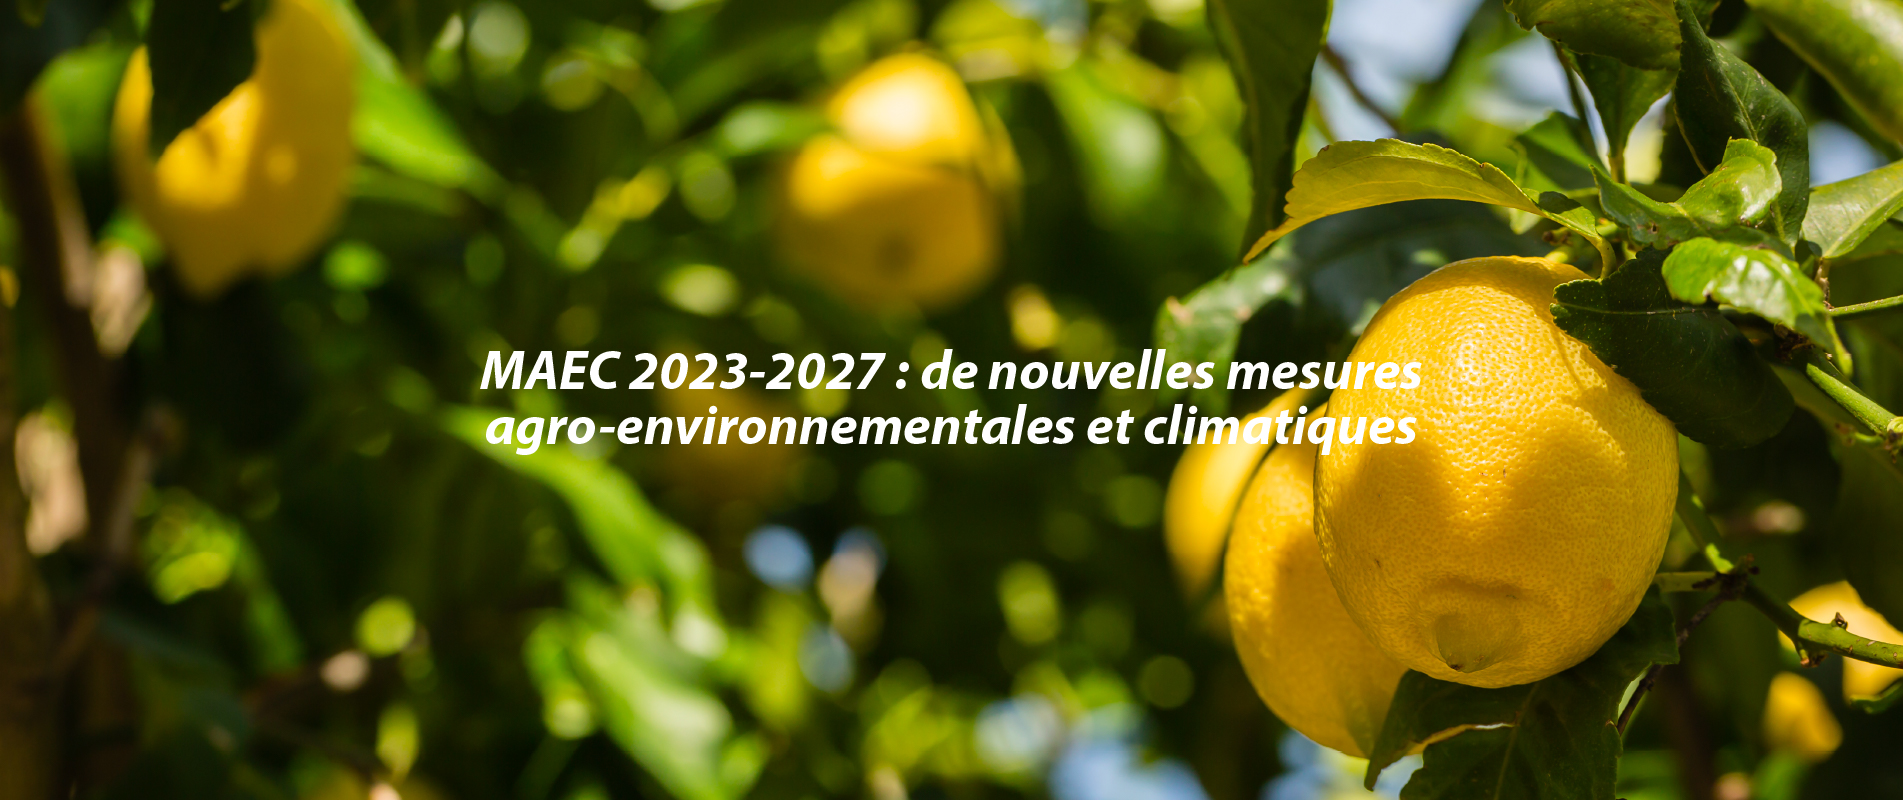 MAEC 2023-2027 : de nouvelles mesures agro-environnementales et climatiques